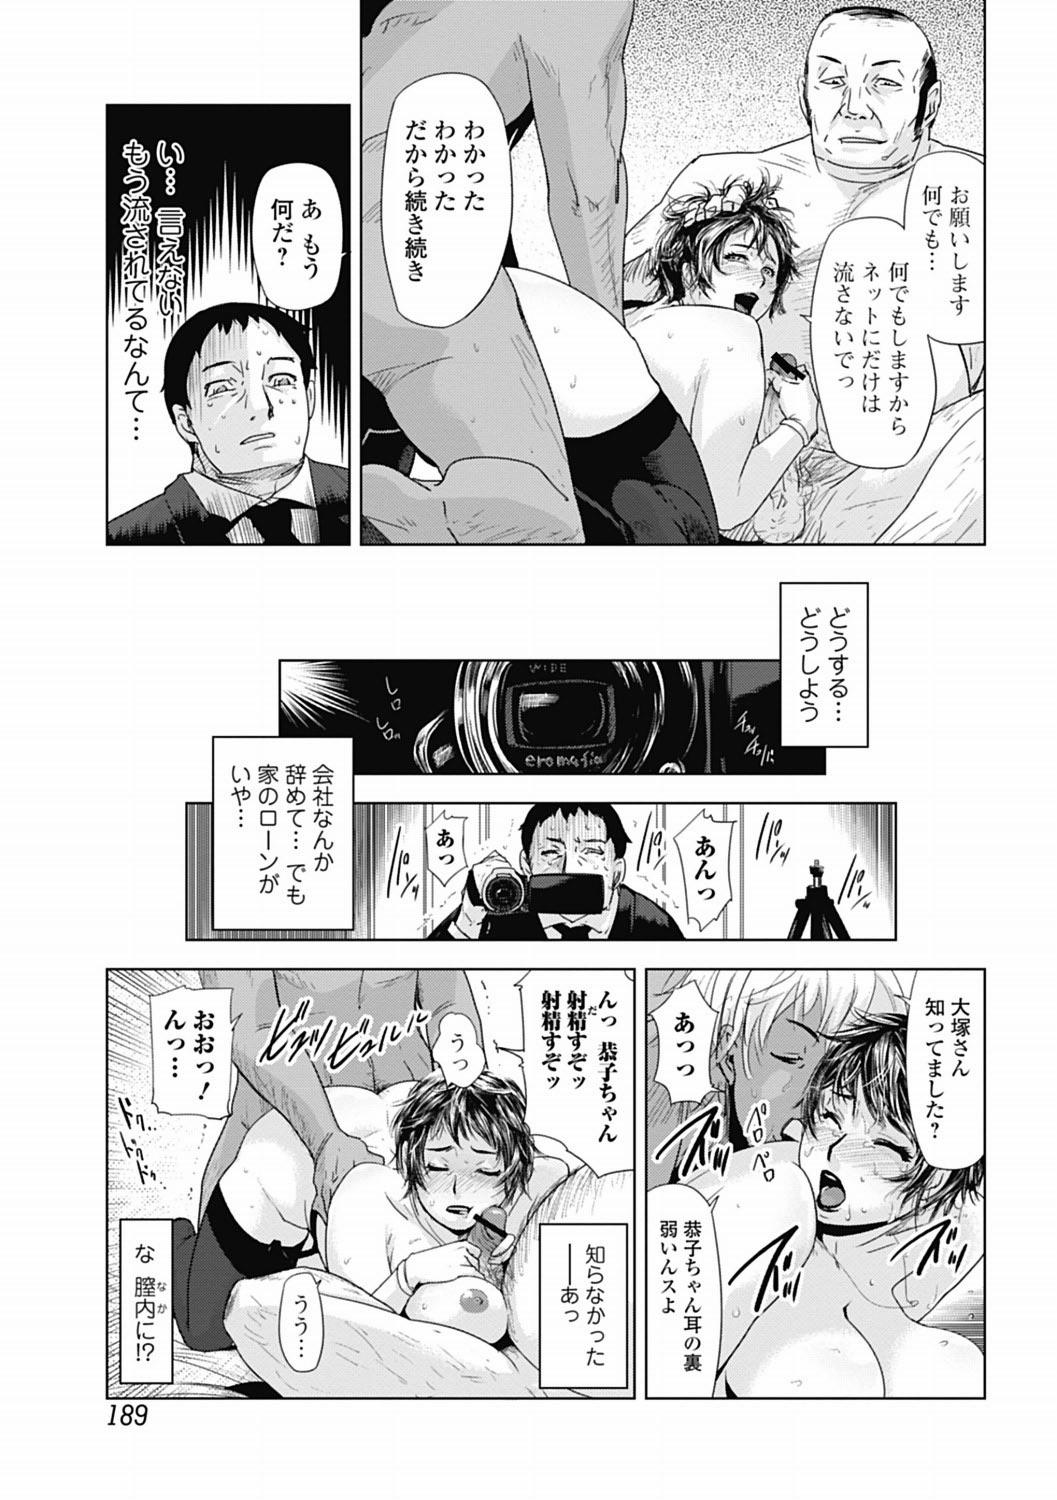 Bishoujo Kakumei KIWAME 2012-04 Vol.19 185